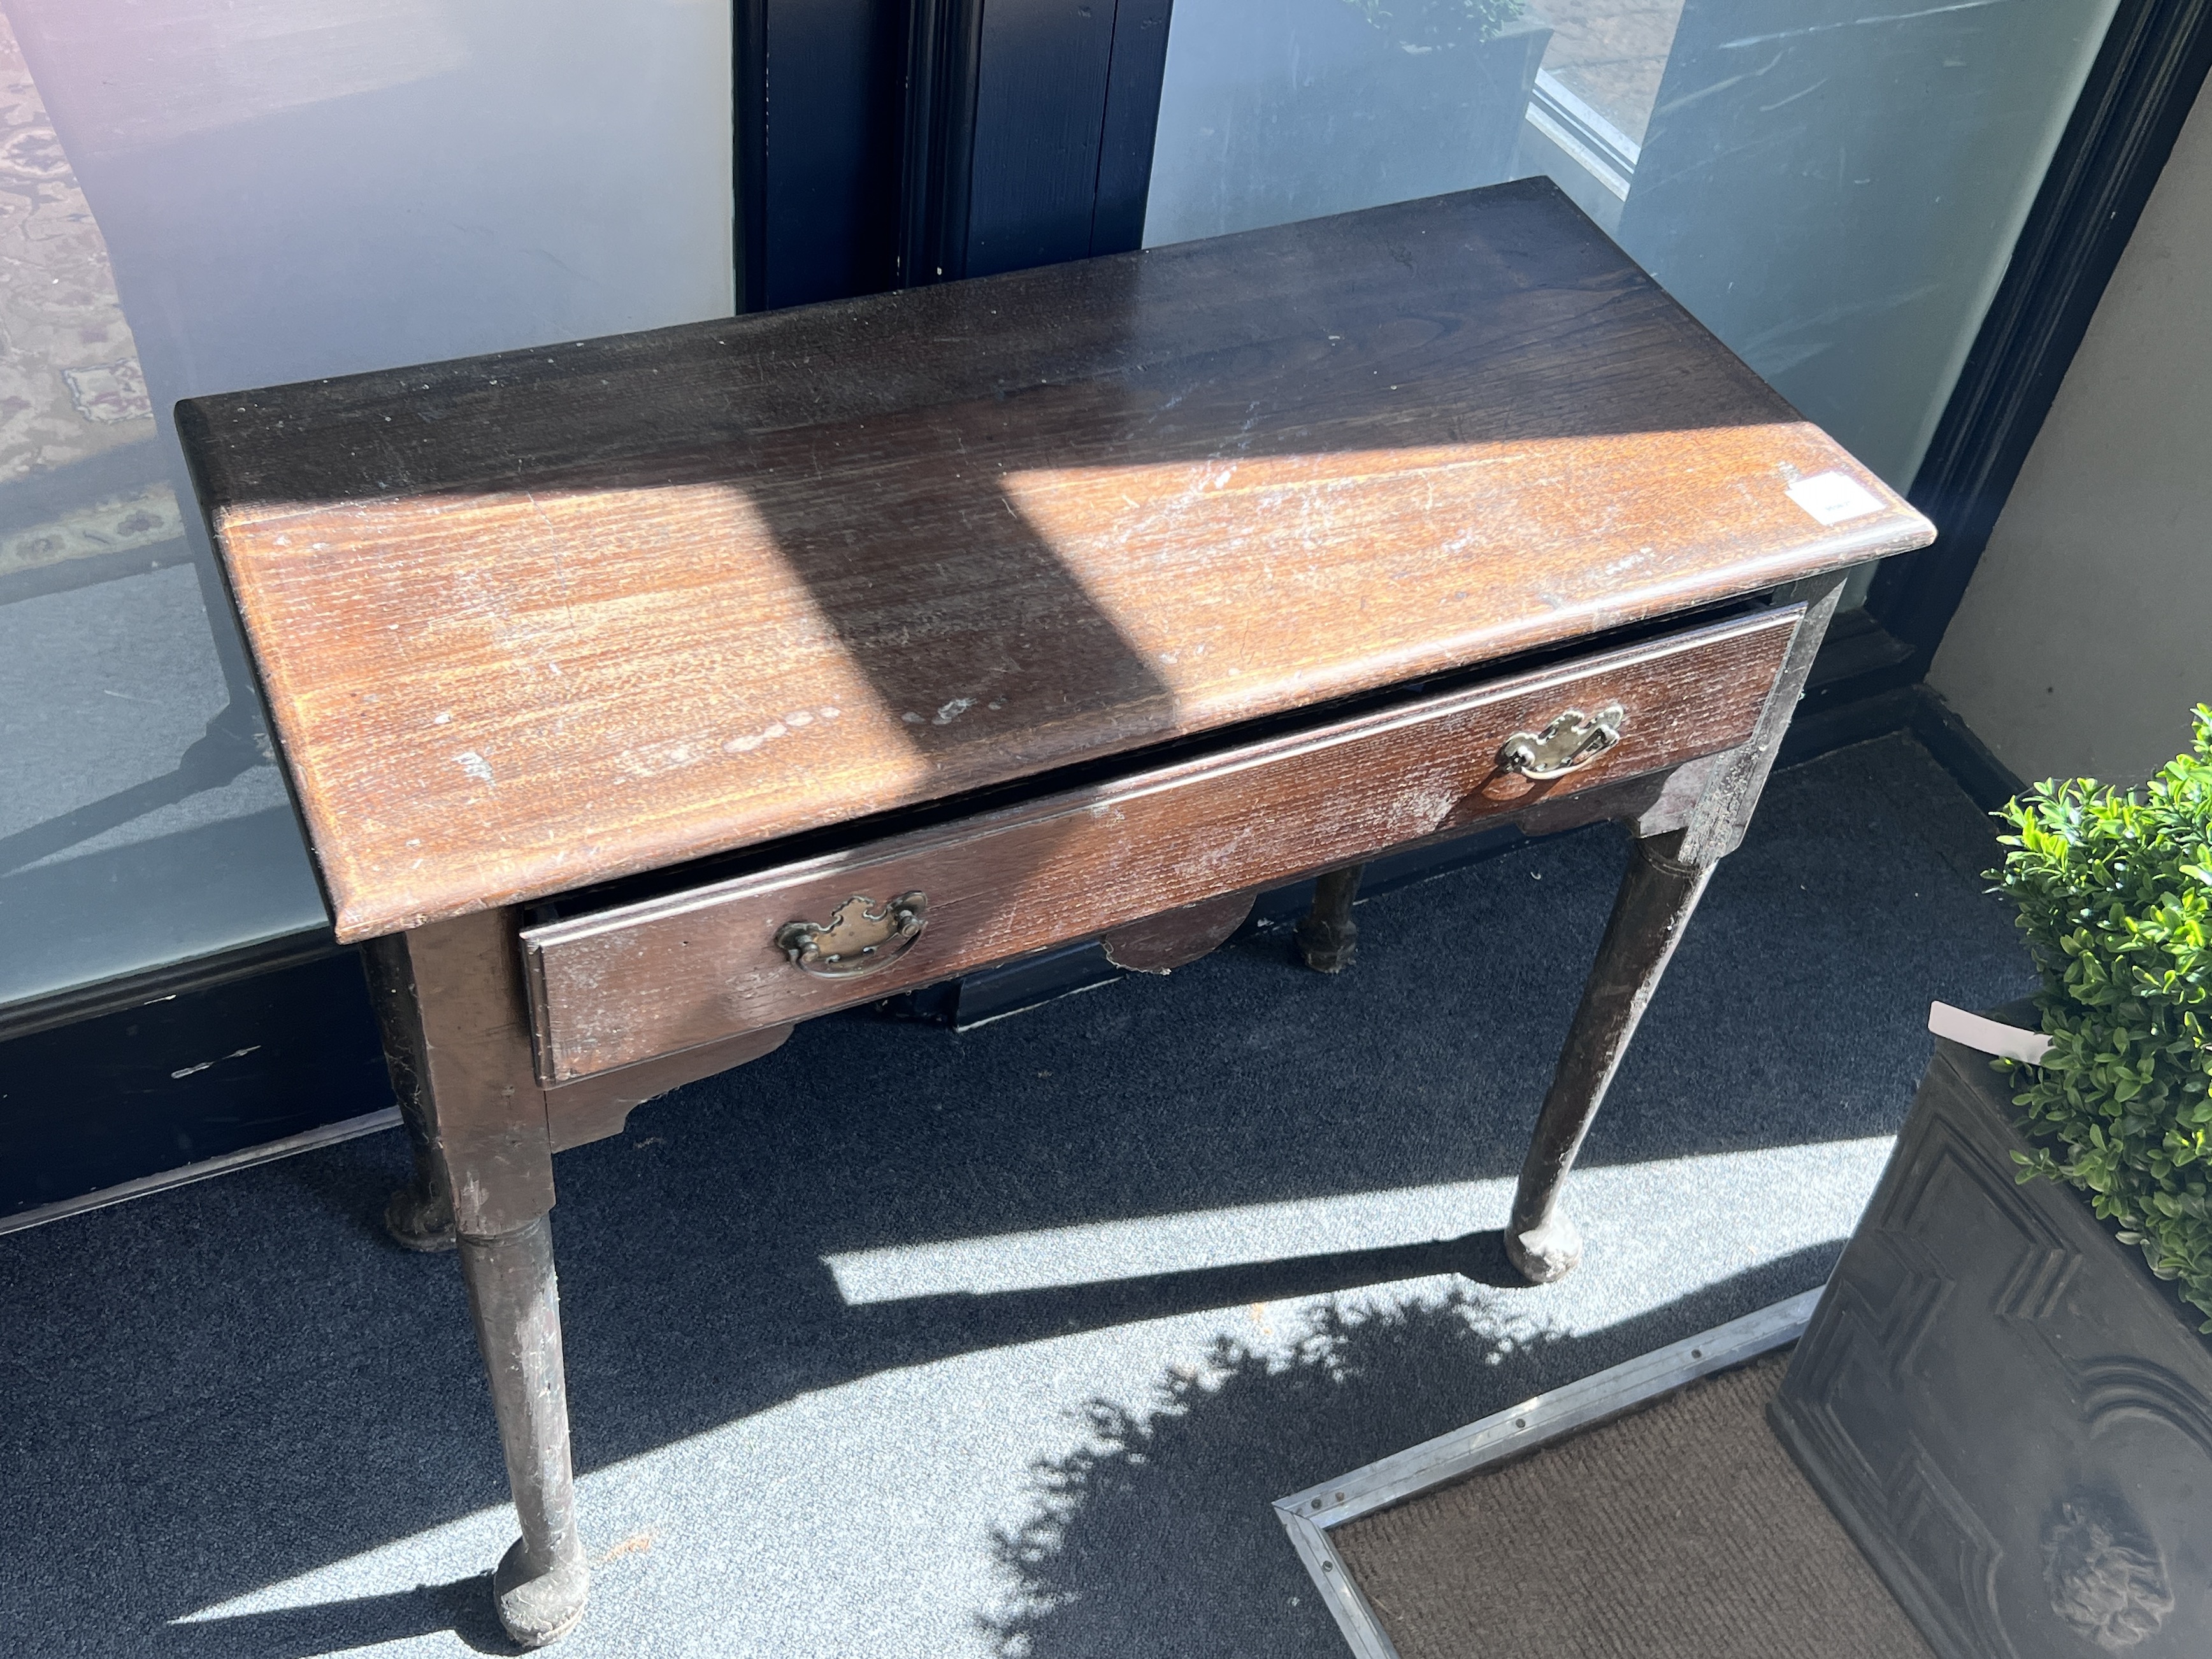 A George III style oak side table, width 82cm, depth 38cm, height 68cm